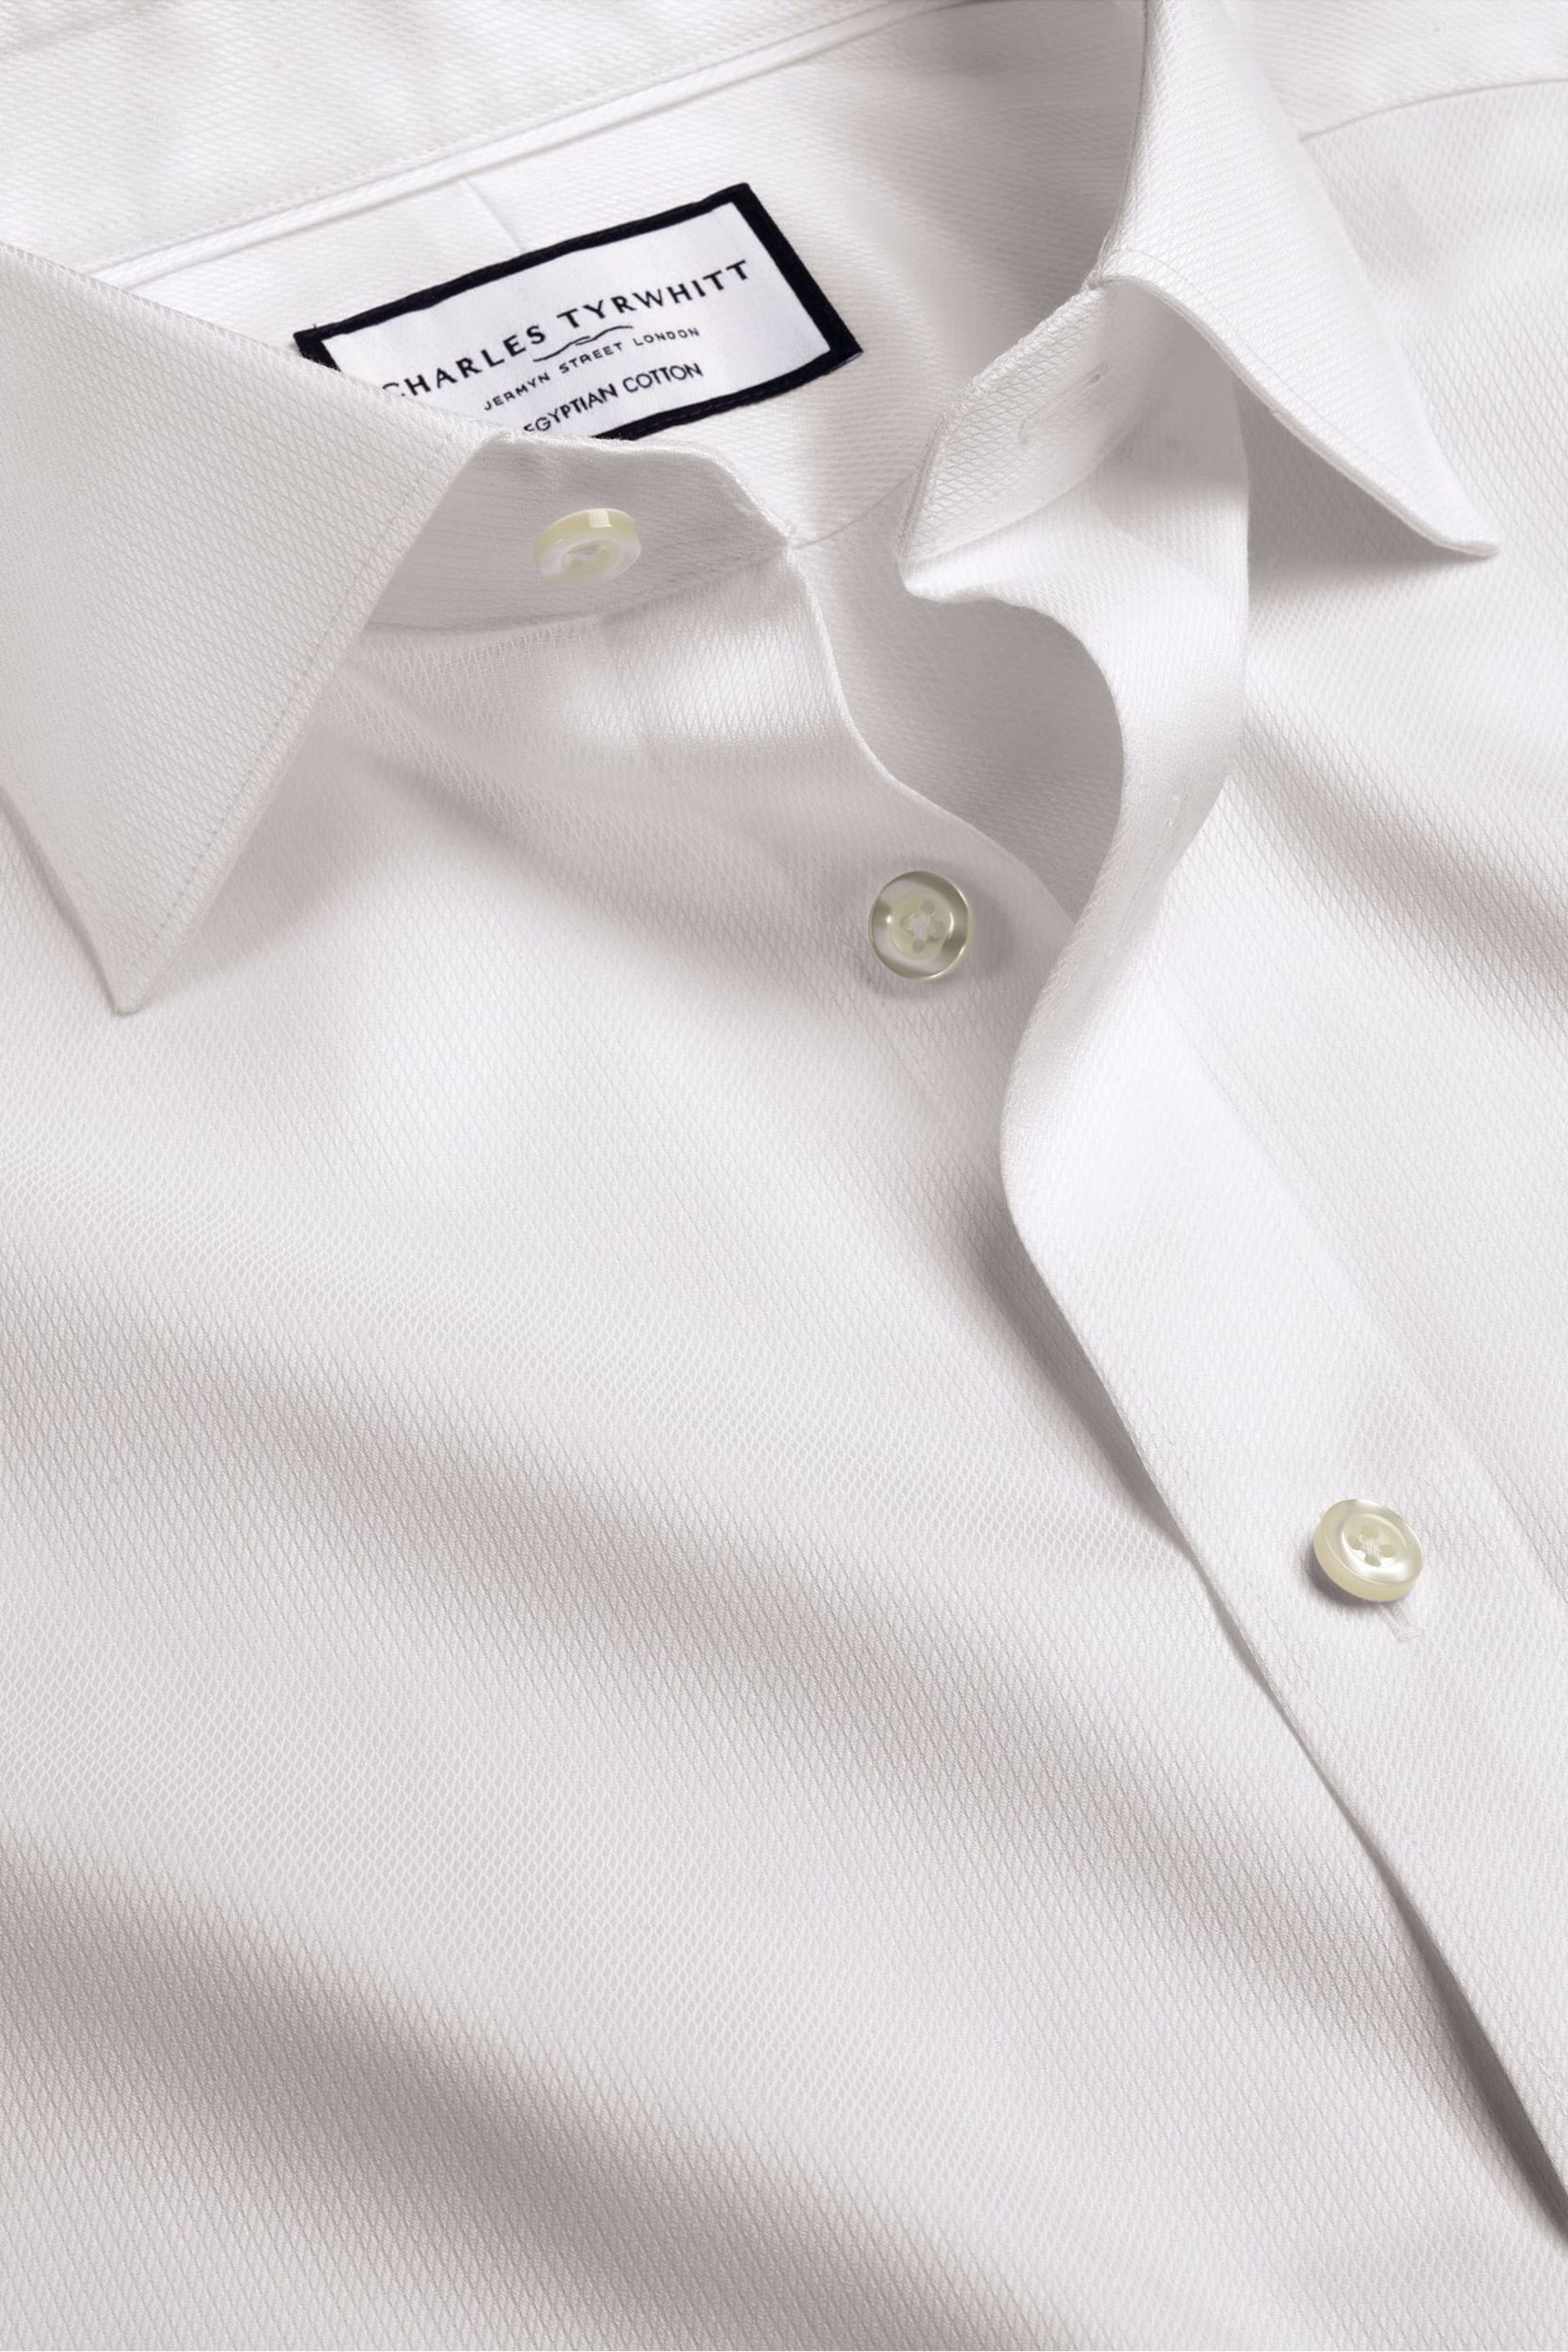 Charles Tyrwhitt White Egyptian Cotton Windsor Weave Slim Fit Shirt - Image 5 of 6